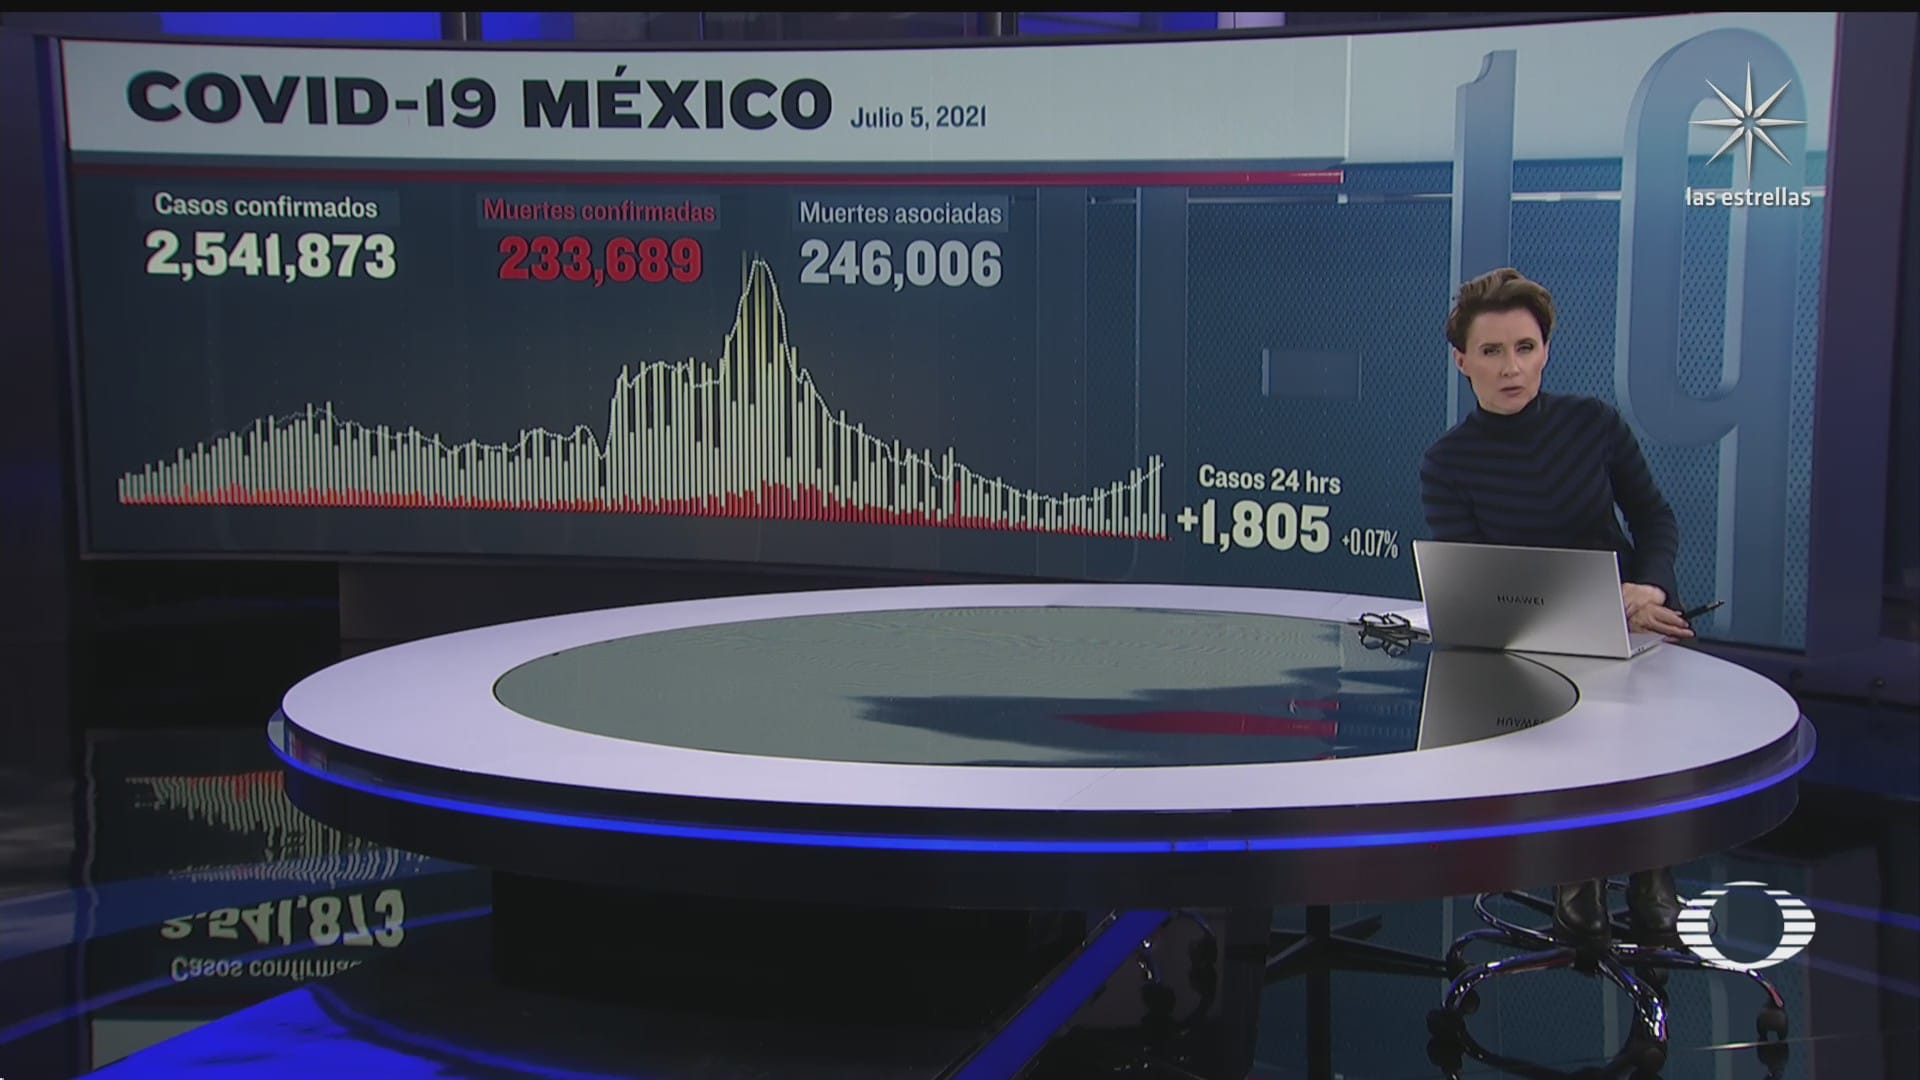 suman en mexico 233 mil 689 muertos por covid